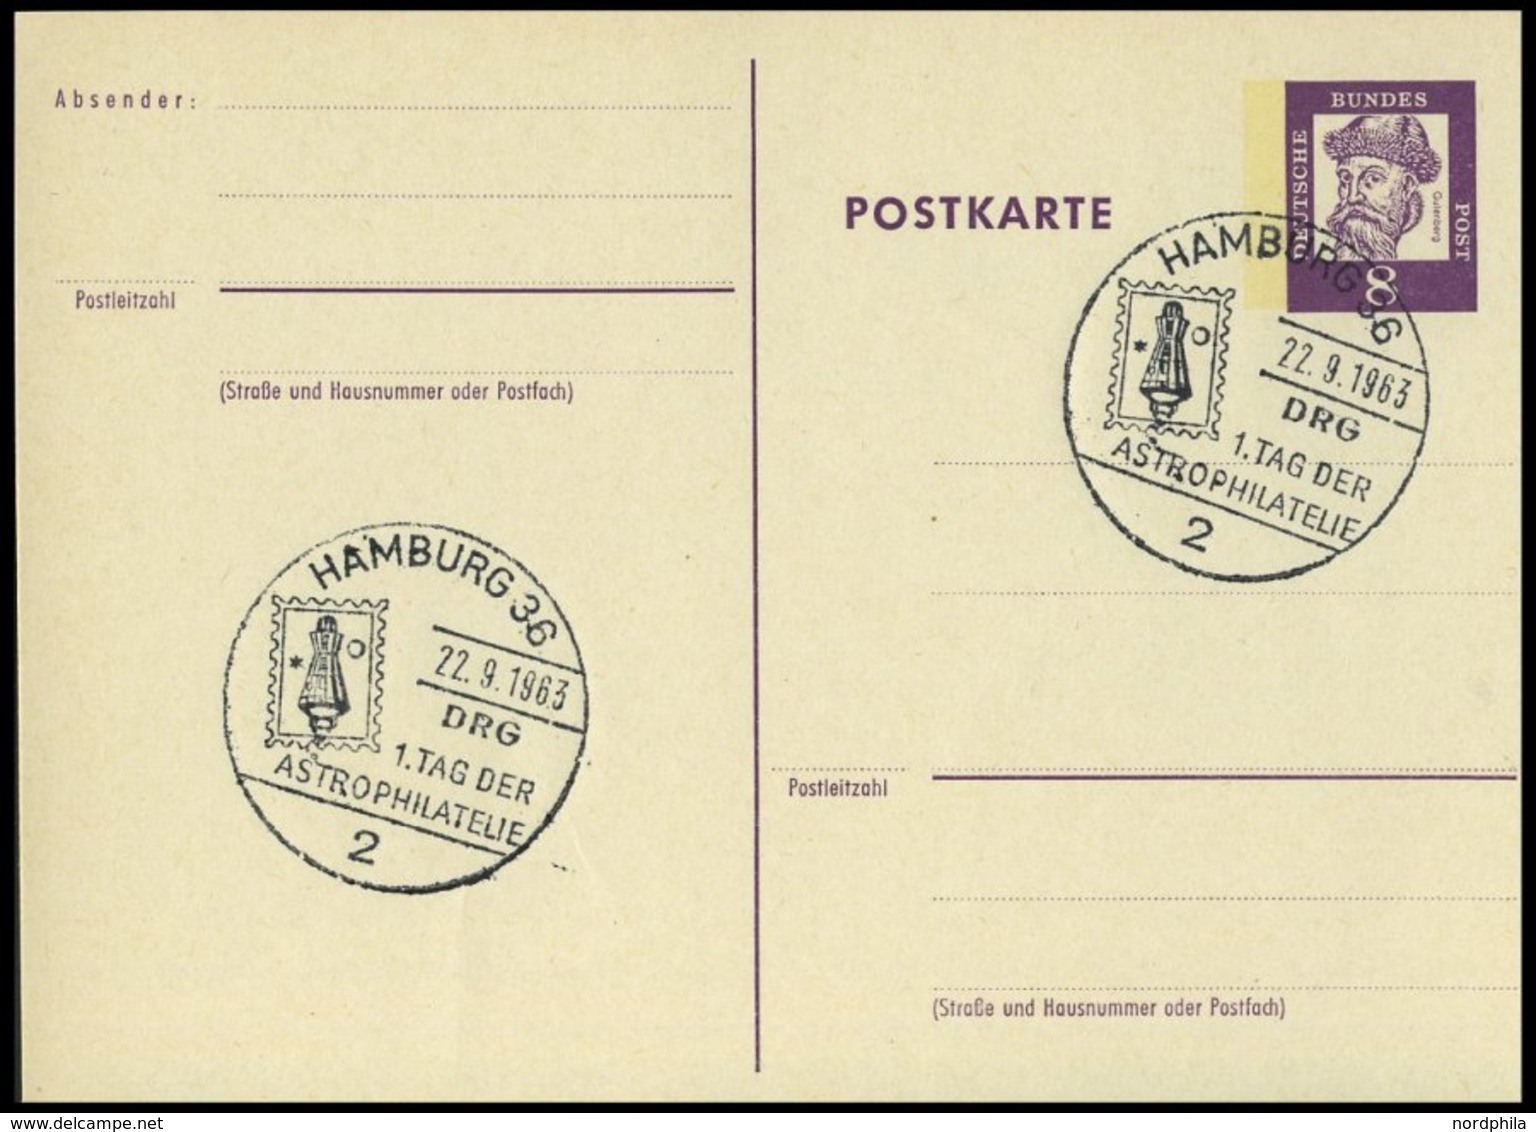 GANZSACHEN P 73 BRIEF, 1962, 8 Pf. Gutenberg, Postkarte In Grotesk-Schrift, Leer Gestempelt Mit Sonderstempel HAMBURG 1. - Sammlungen